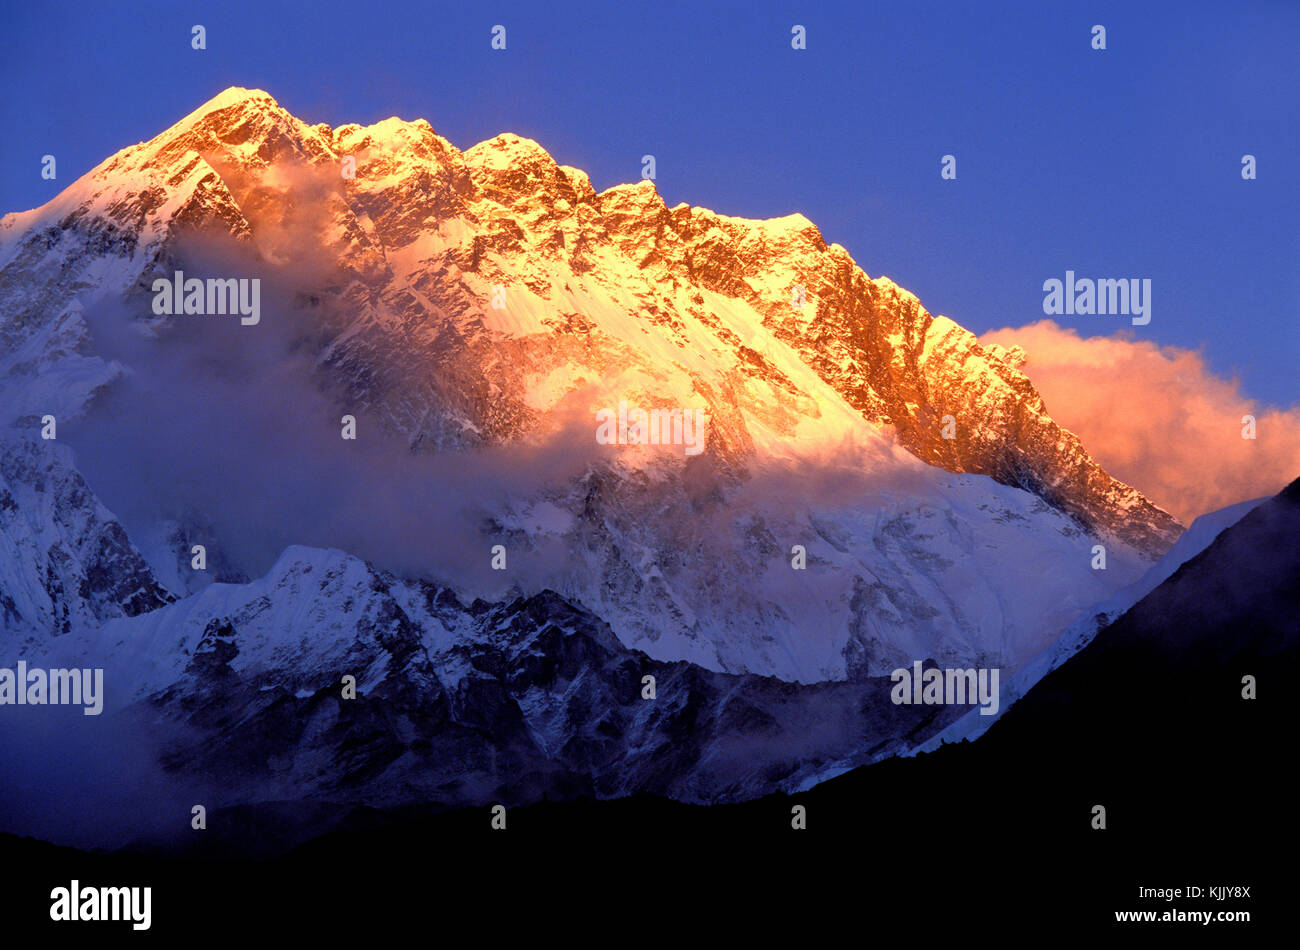 Sunset over Nuptse and Lhotse summits. Solu Khumbu.  Nepal. Stock Photo